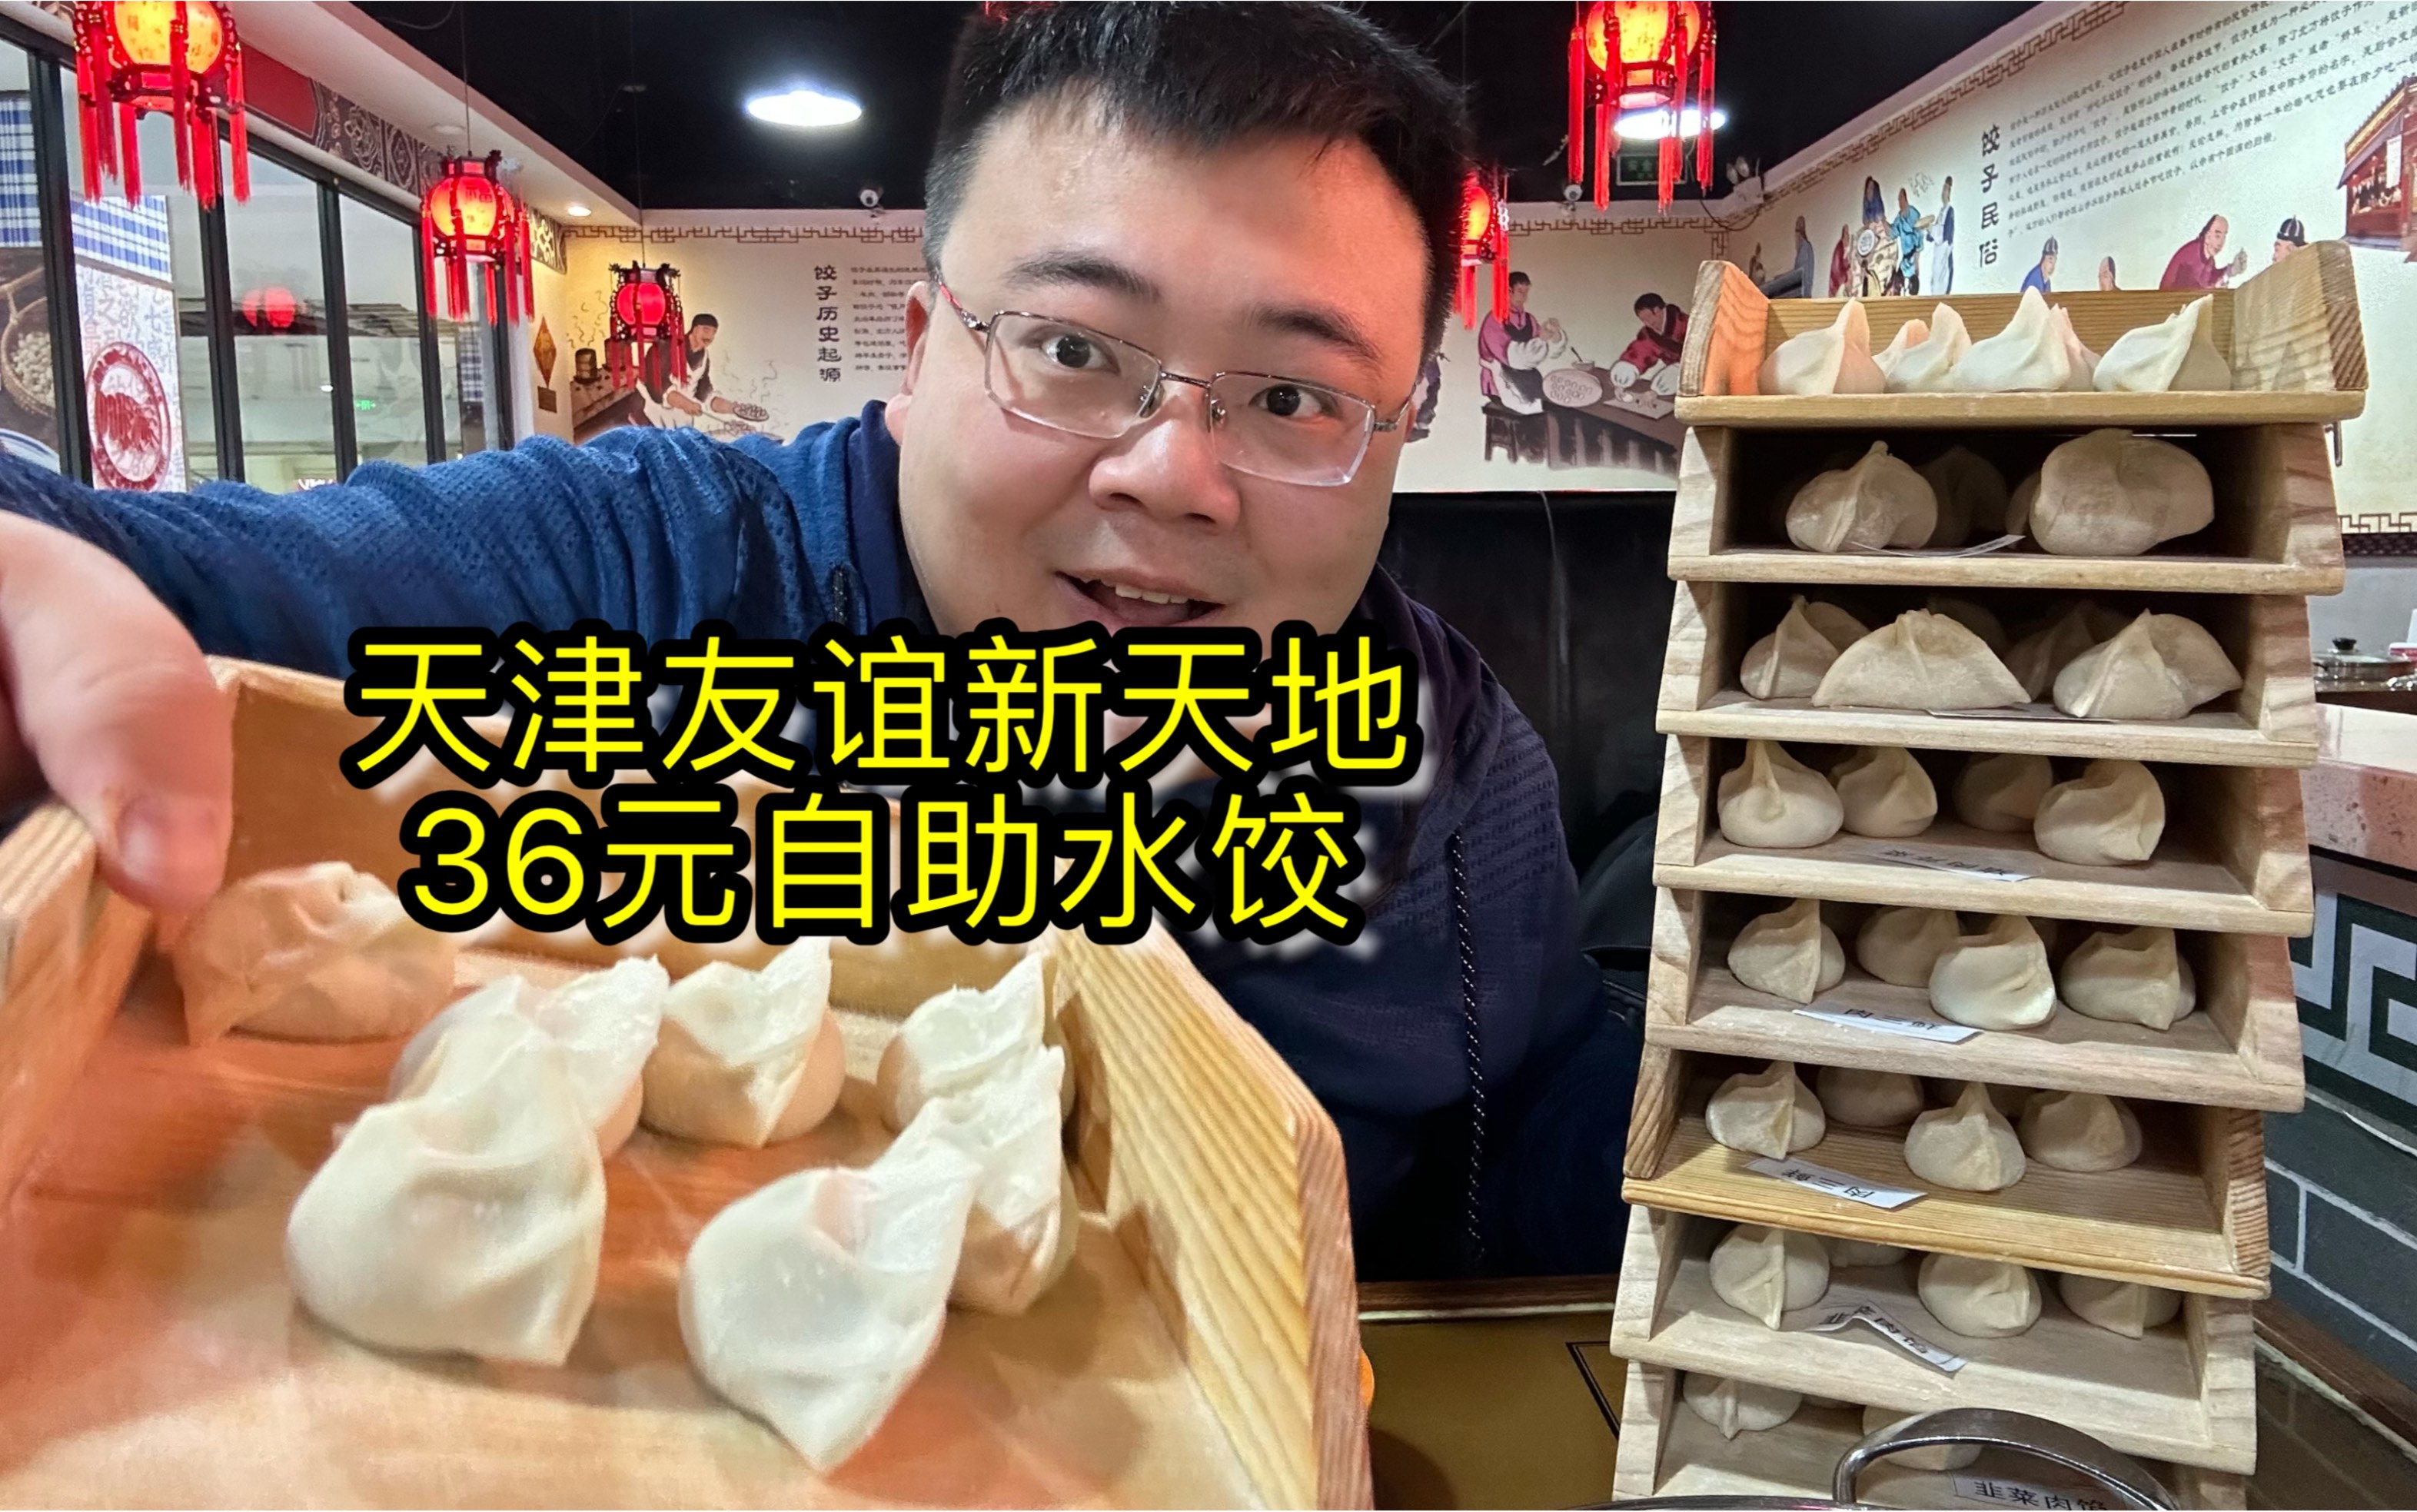 冬至吃饺子喽，天津友谊新天地36元水饺自助，皮薄馅大真好吃！